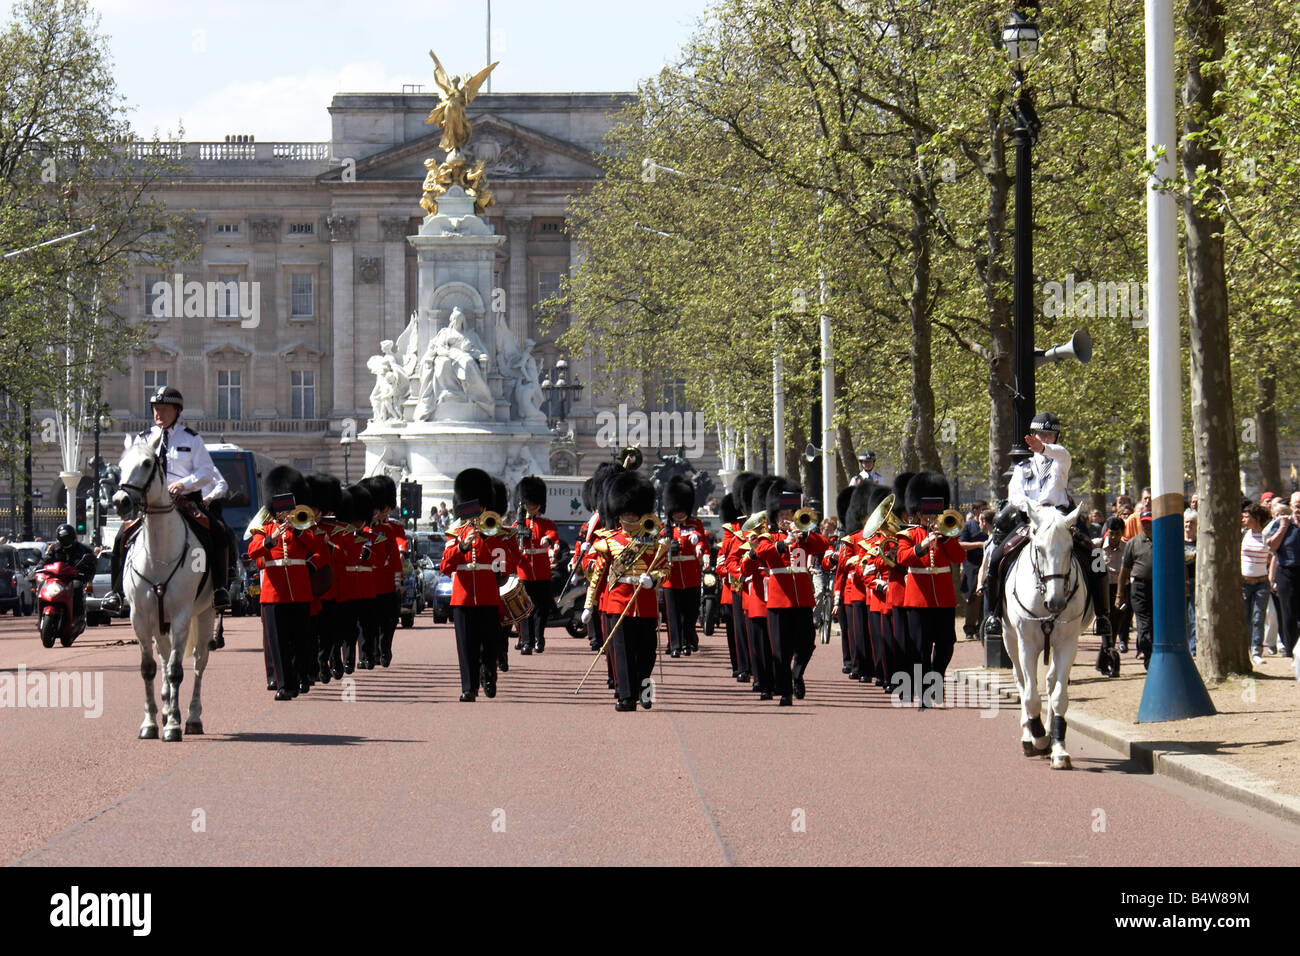 Marching Band militaire jouant à la modification de la garde à l'avant de l'Édifice commémoratif Victoria et Buckingham Palace SW1 London England Banque D'Images